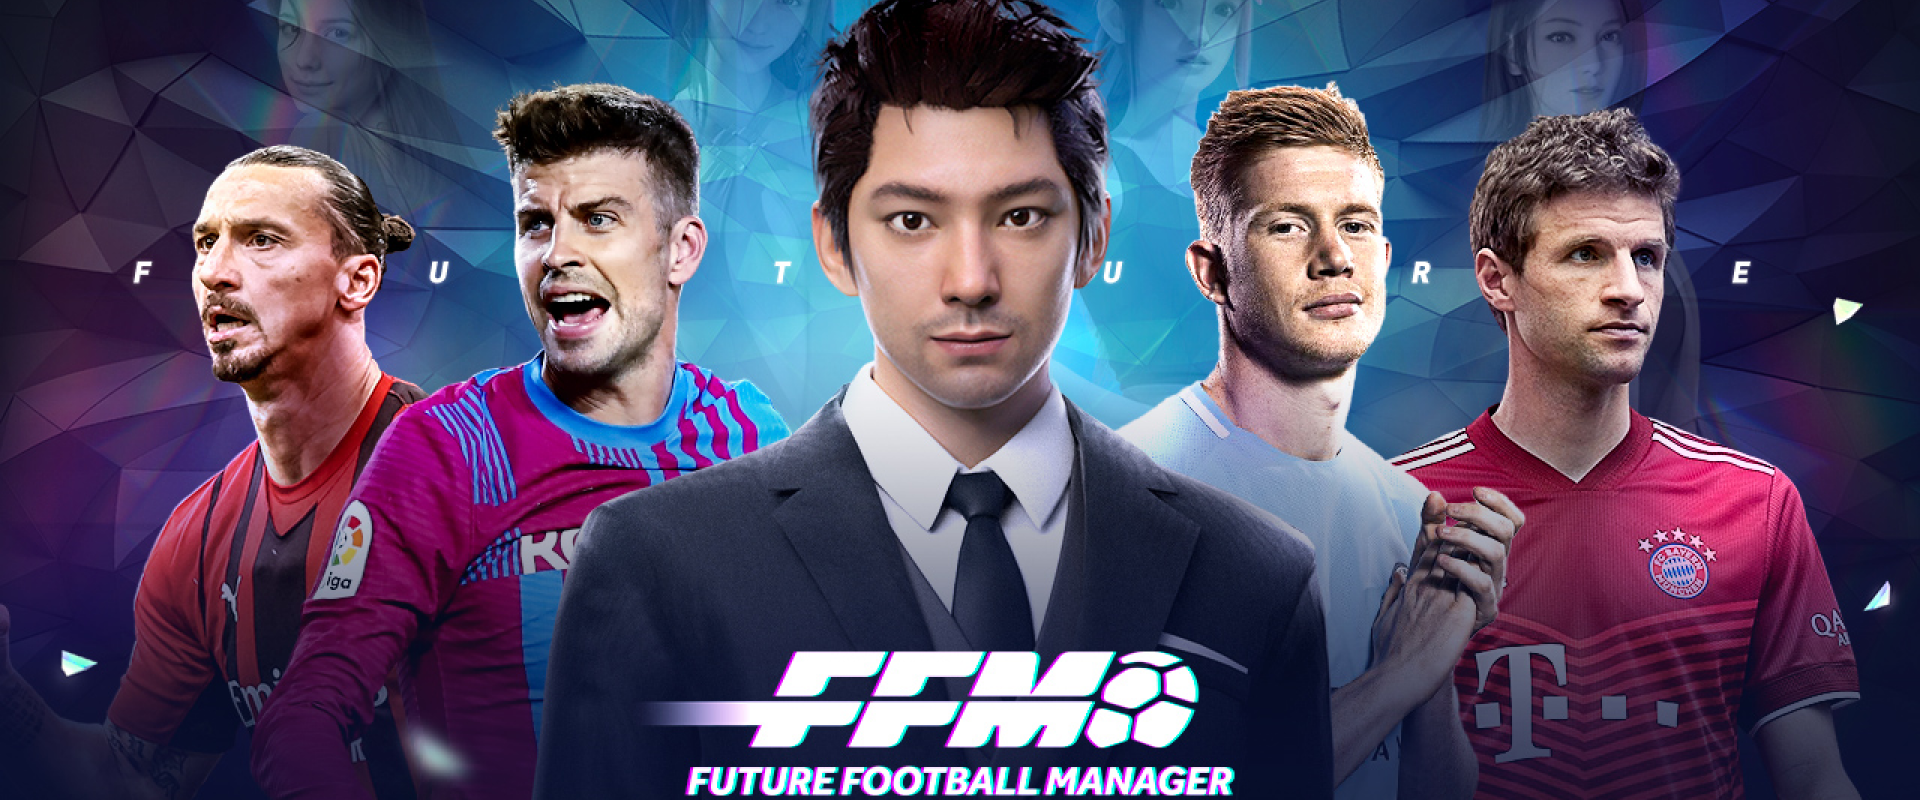 Football Manager 2023 - Baixar para Mac Grátis